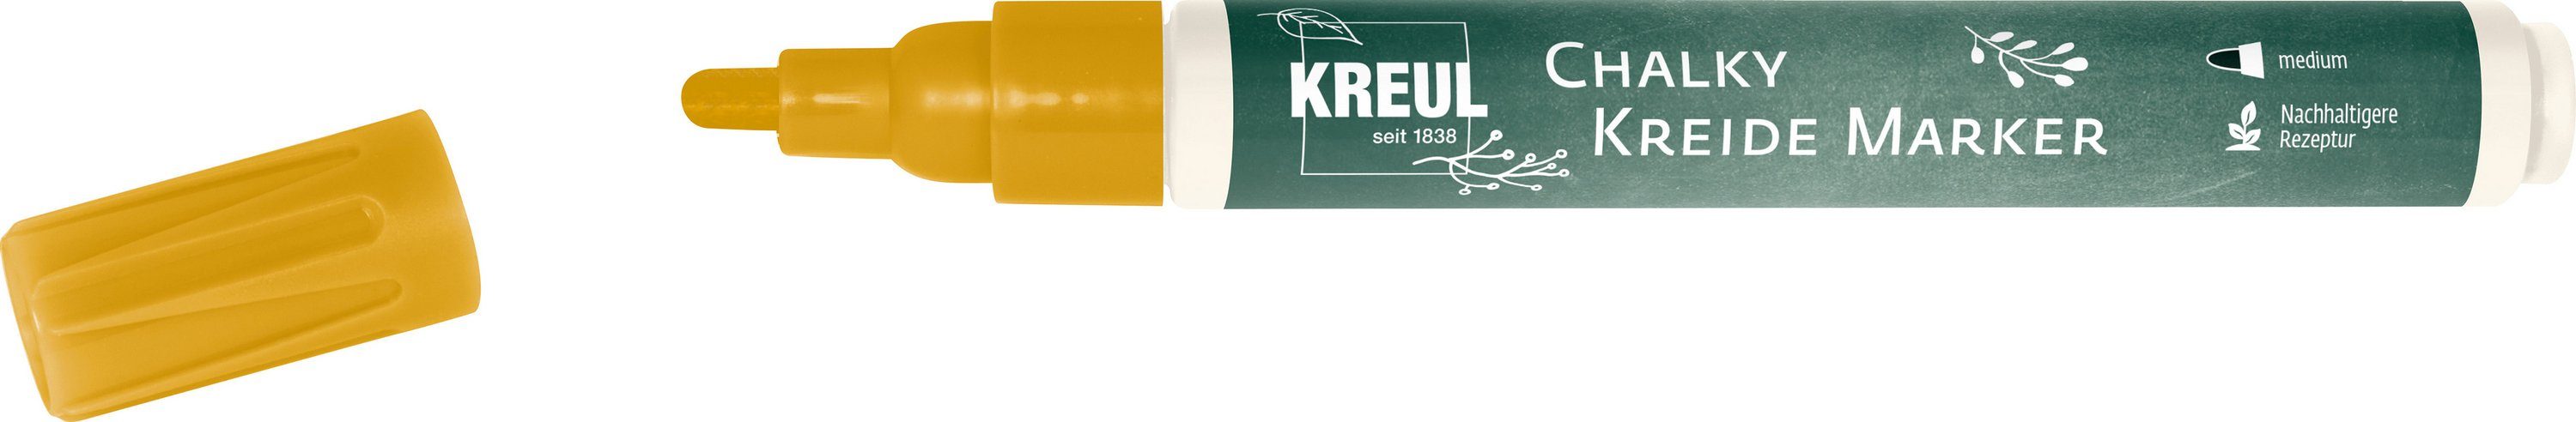 Kreul Kreidemarker Chalky, 2-3mm Strichstärke Golden Glow